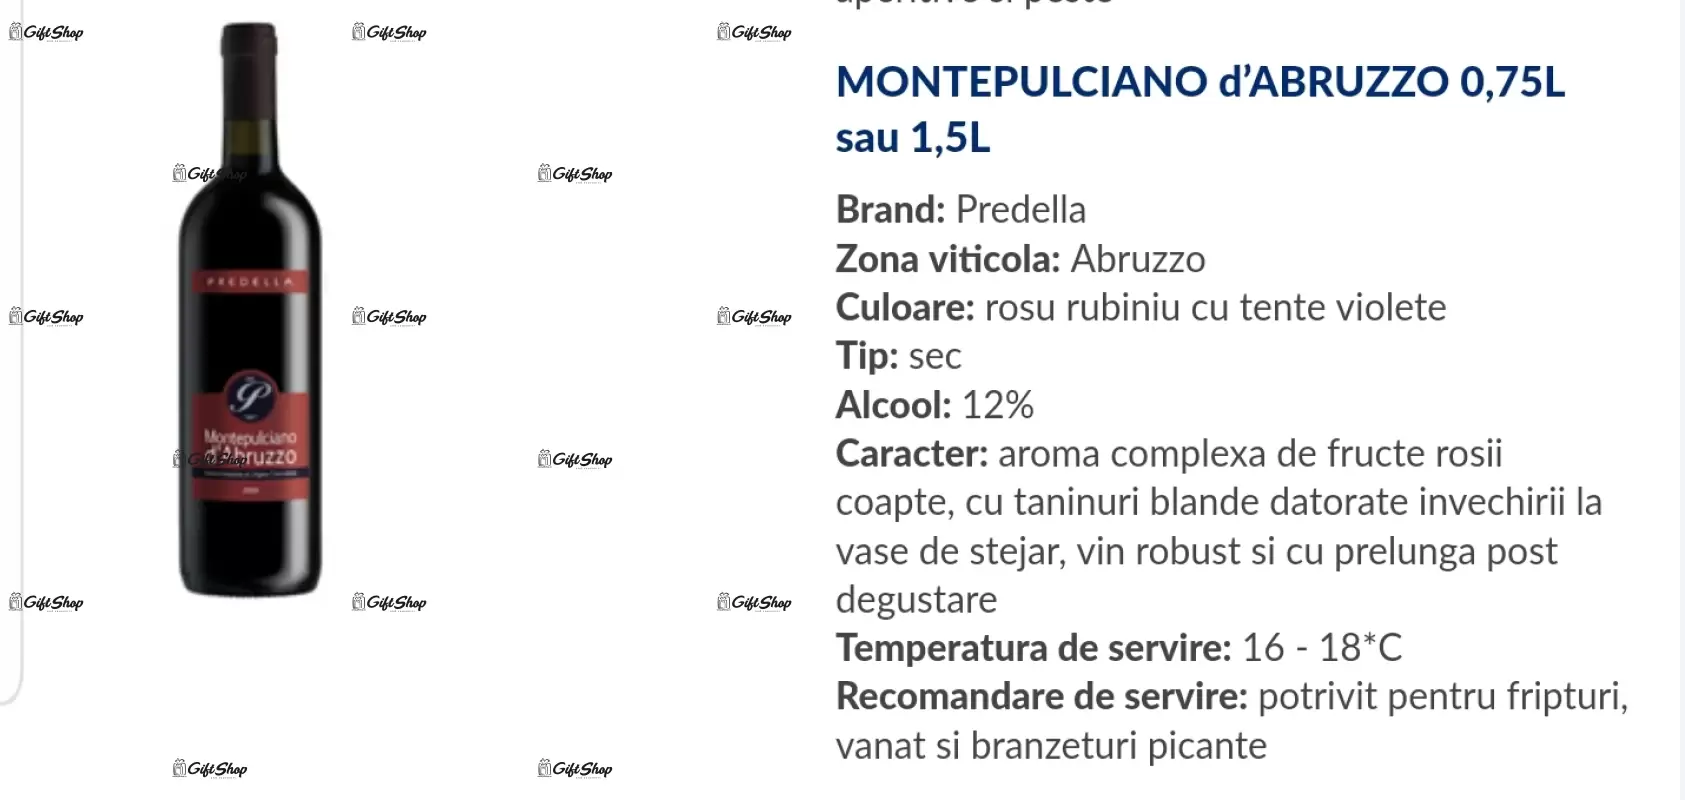 La multi ani 80 editie limitata, rosu predellea abruzzo, sec, 12.5% alc.